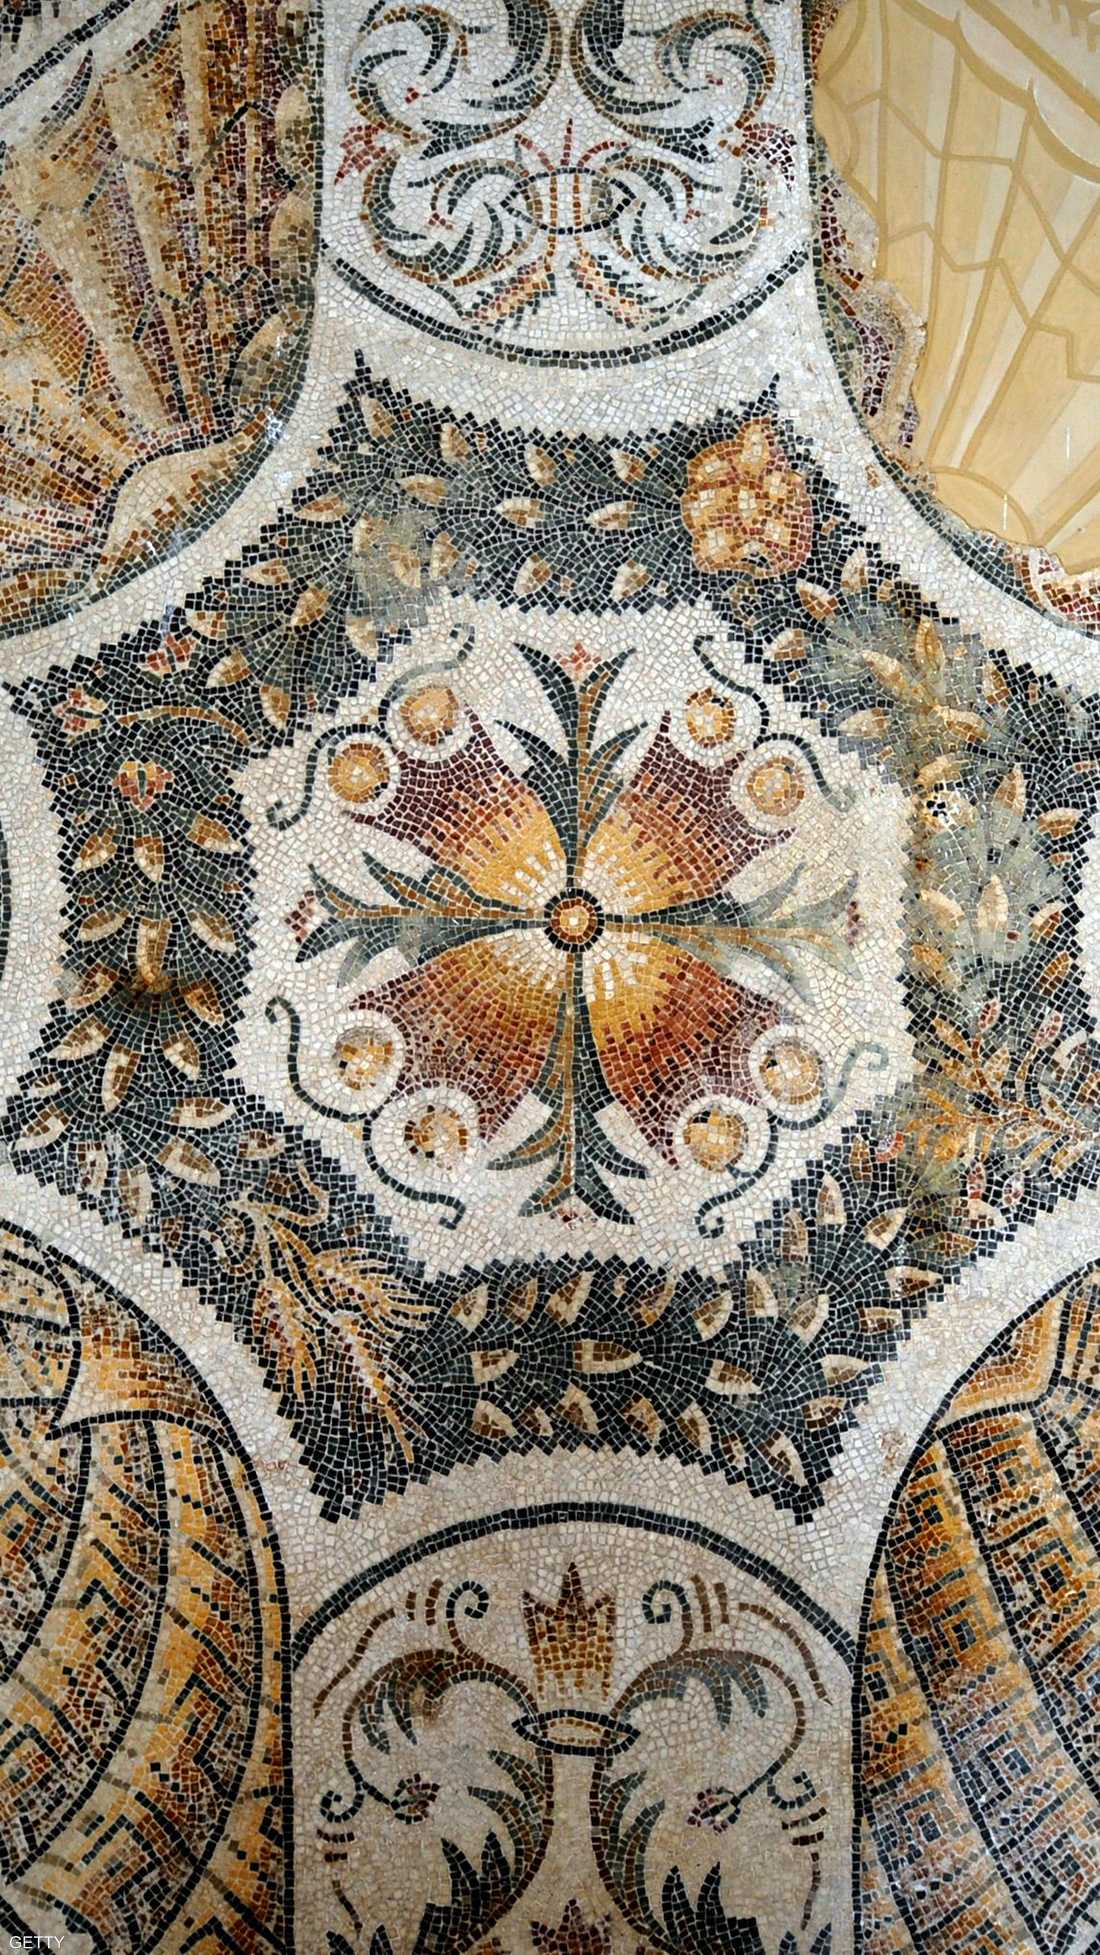 ثاني متحف في العالم بالنسبة إلى فن الفسيفساء الرومانية بعد متحف فسيفساء زيوغما في تركيا